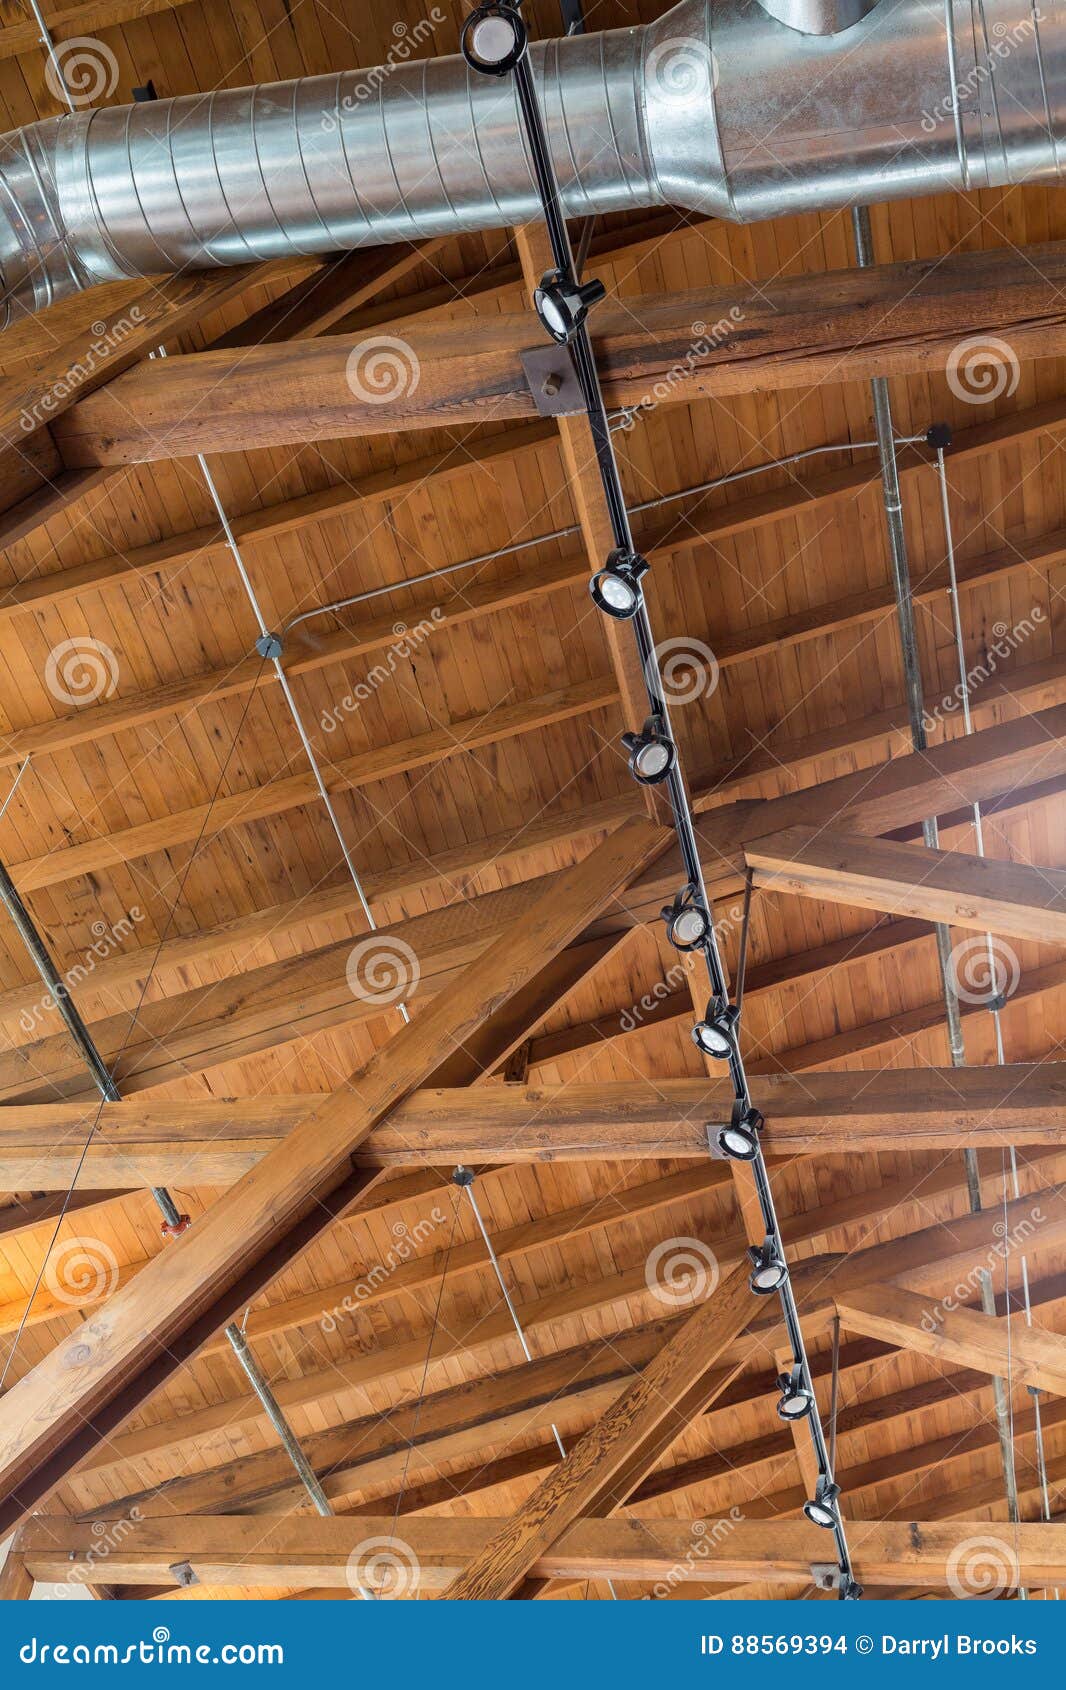 Dachsparren und Kanalisierung. Kanalisierung und Lichter unter einem Naturholzdach und -dachsparren